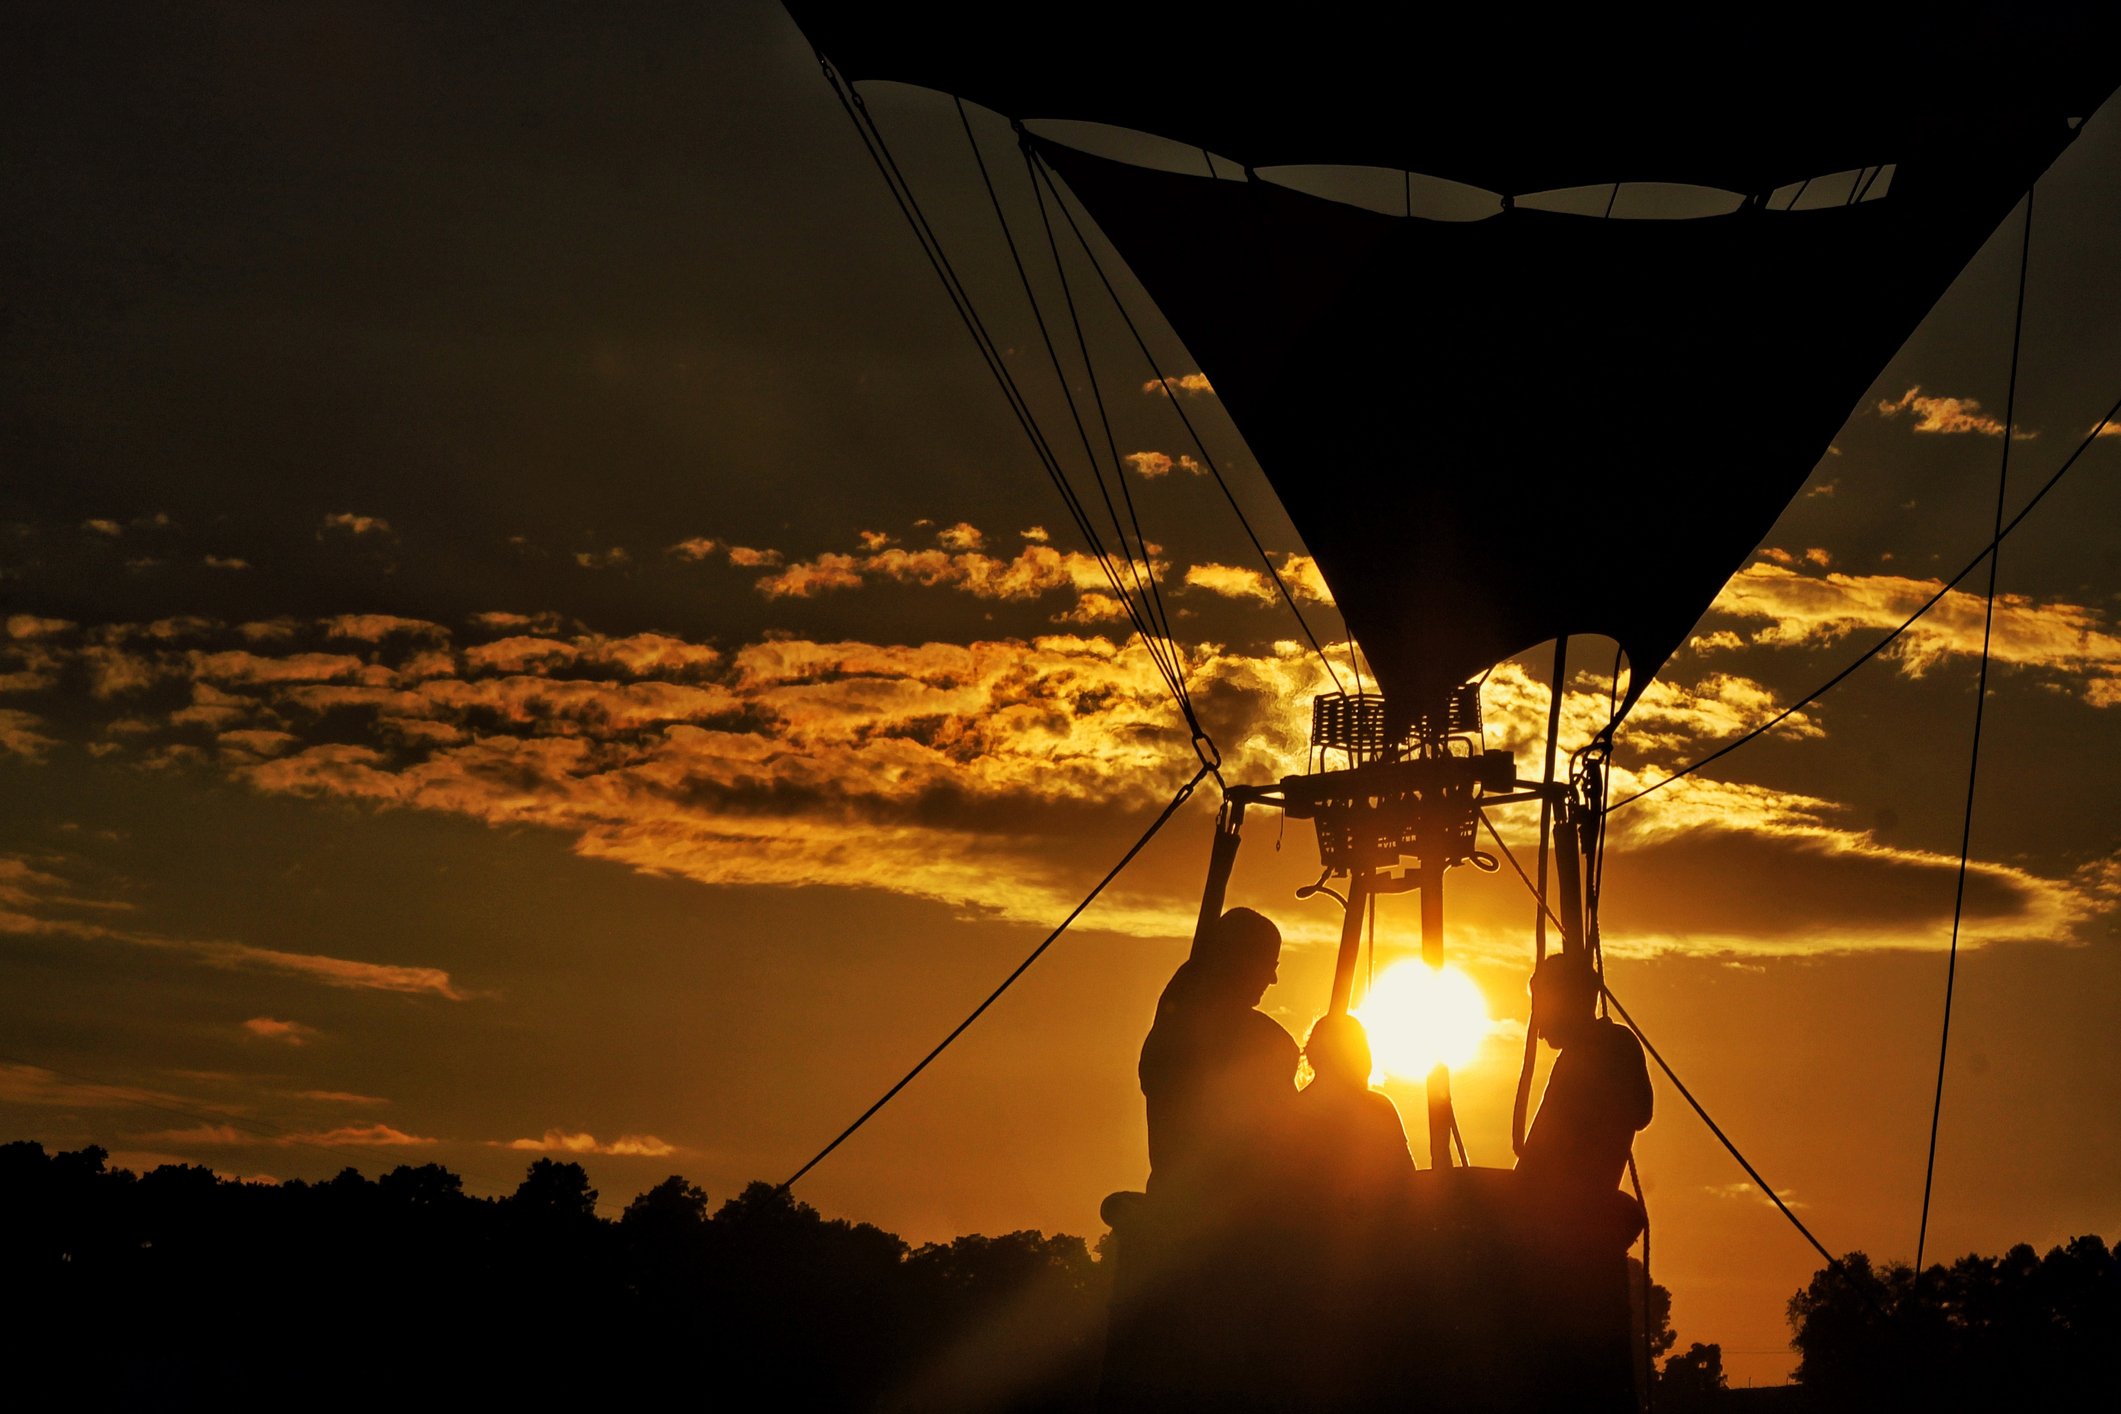 Weitwinkelaufnahme von Menschen in einem Heißluftballon am Himmel während des Sonnenuntergangs | Quelle: Getty Images